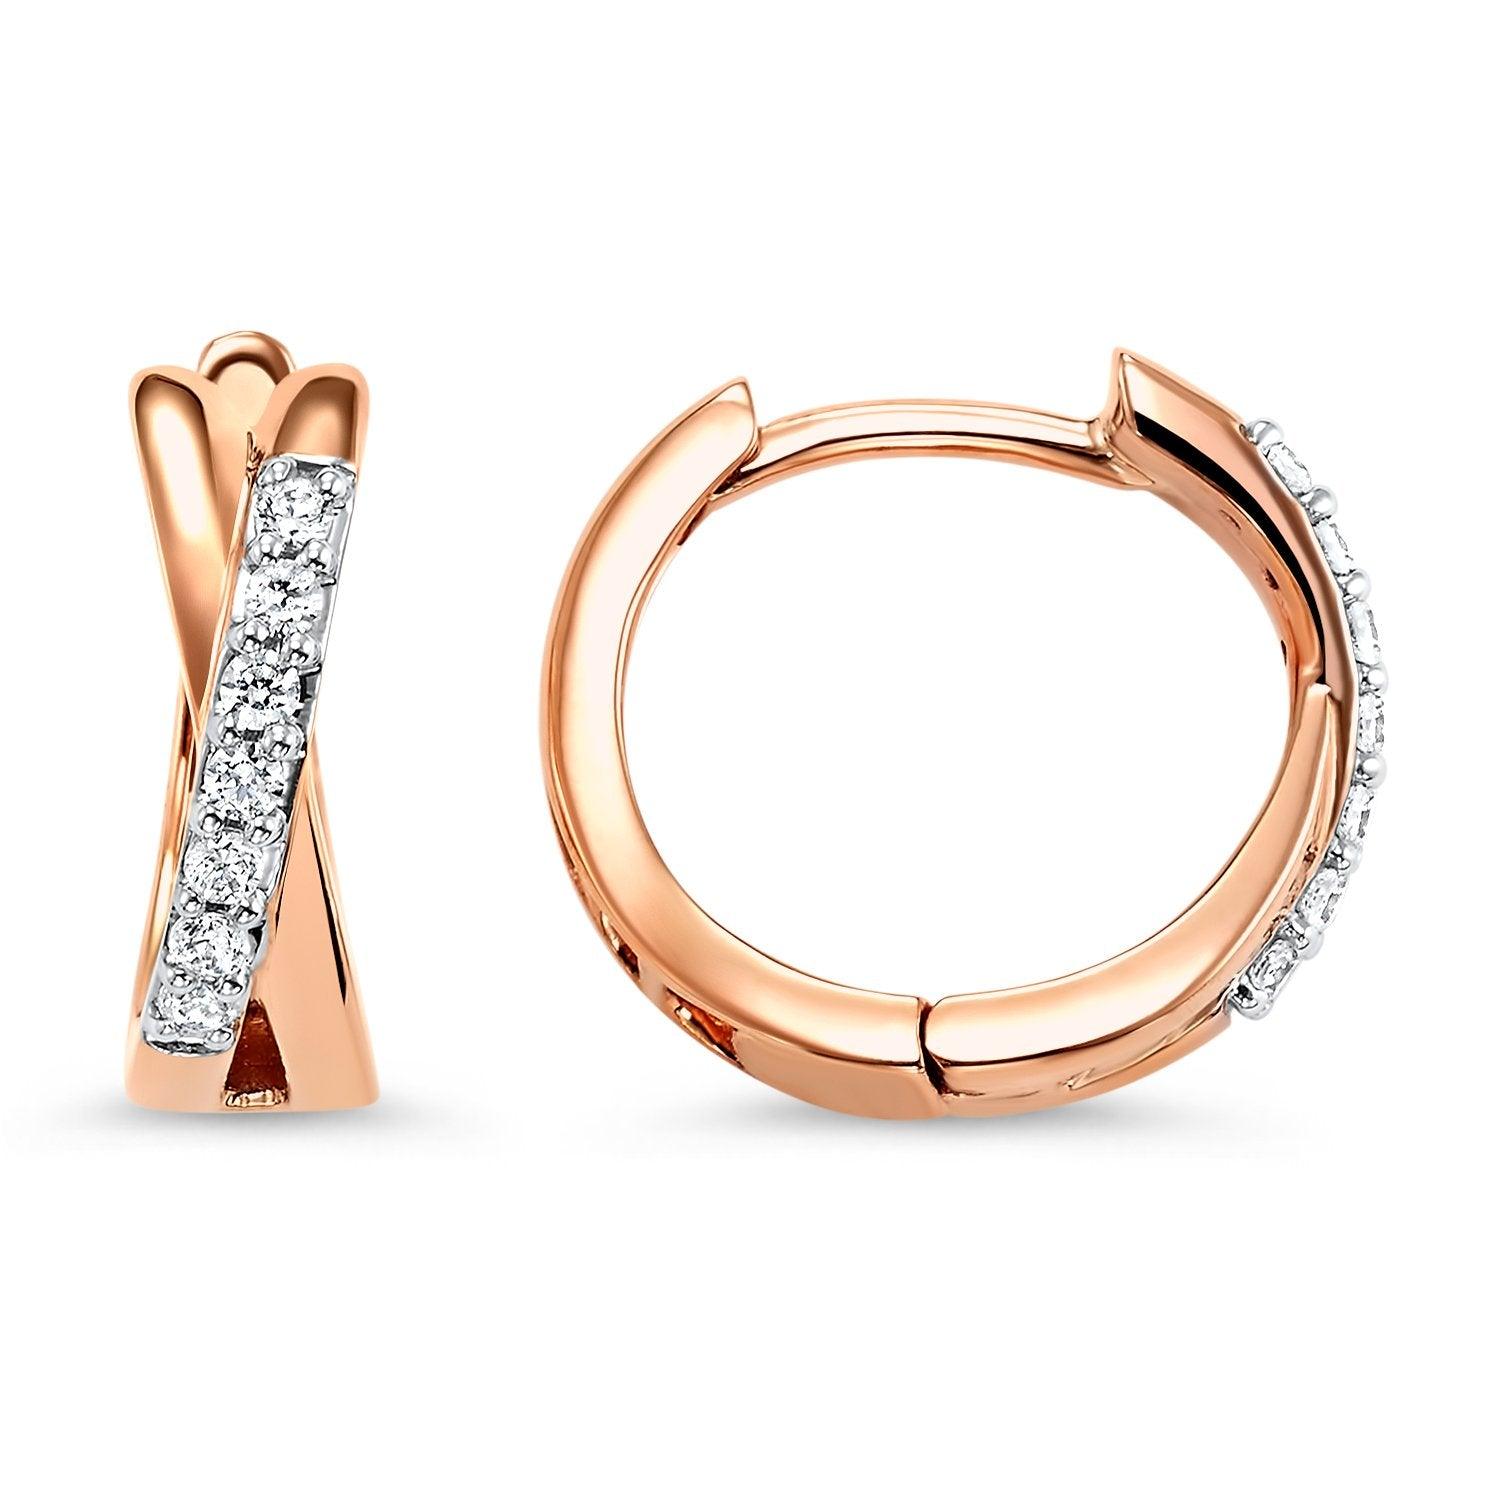 BW James Jewelers Earrings Rose Gold Twist Diamond Earrings